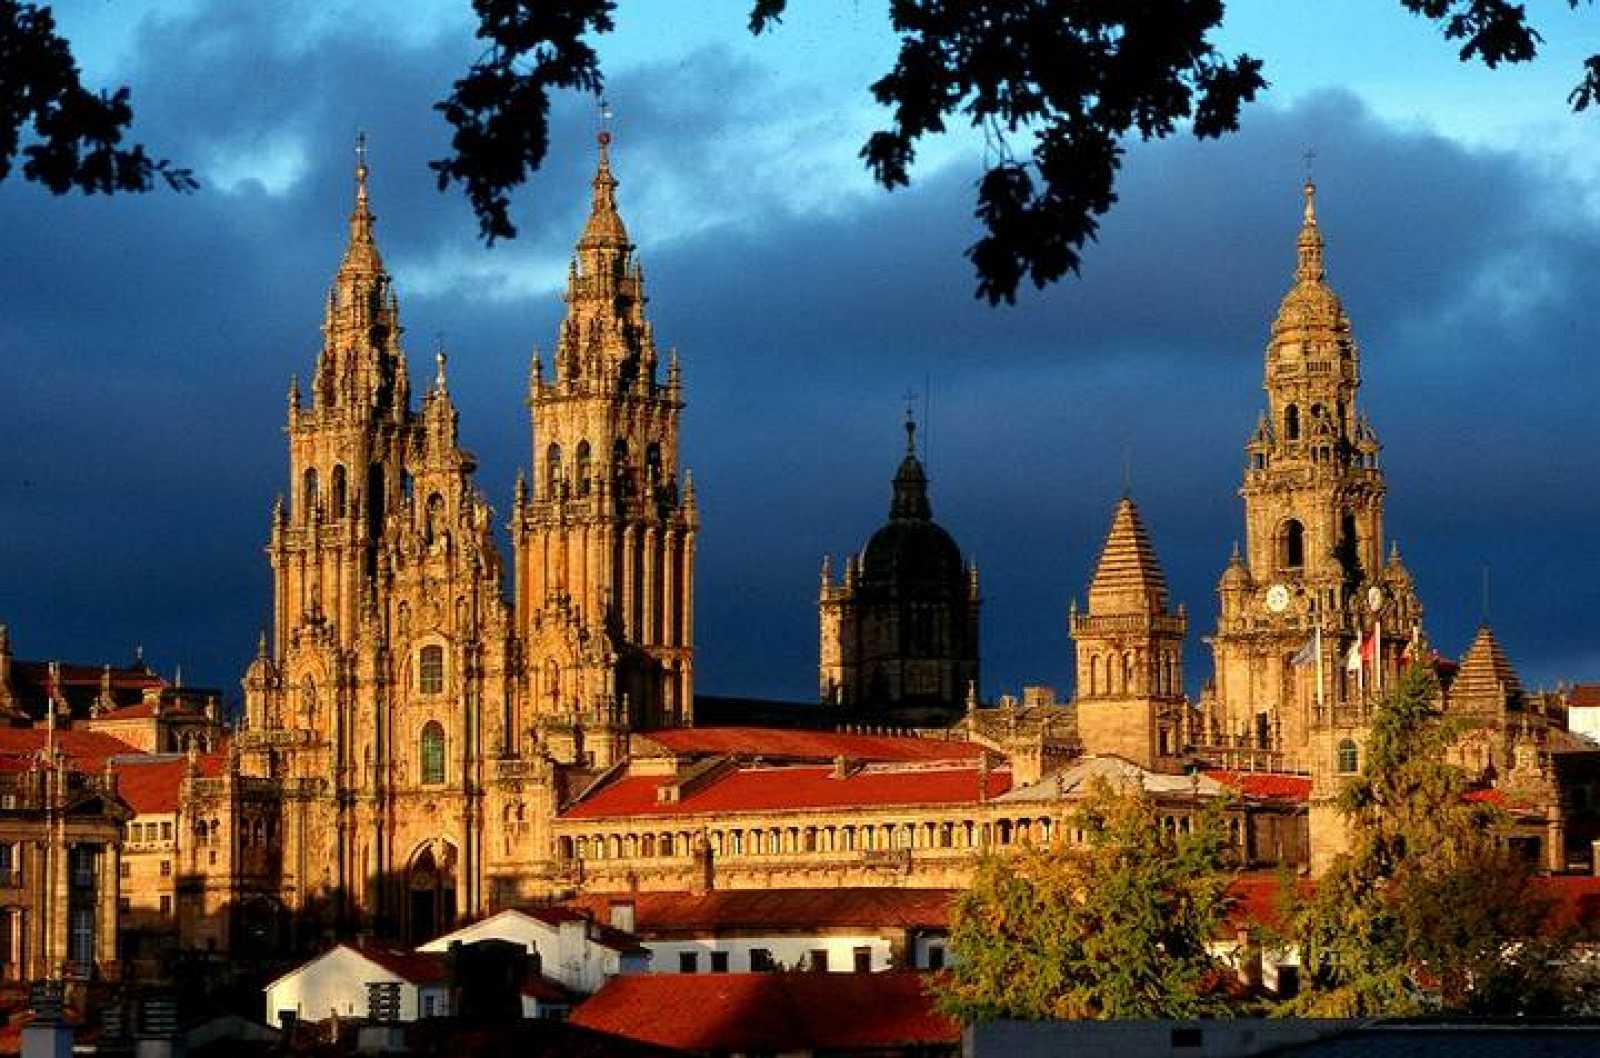 Santiago de Compostela - Que ver y hacer en la capital de Galicia